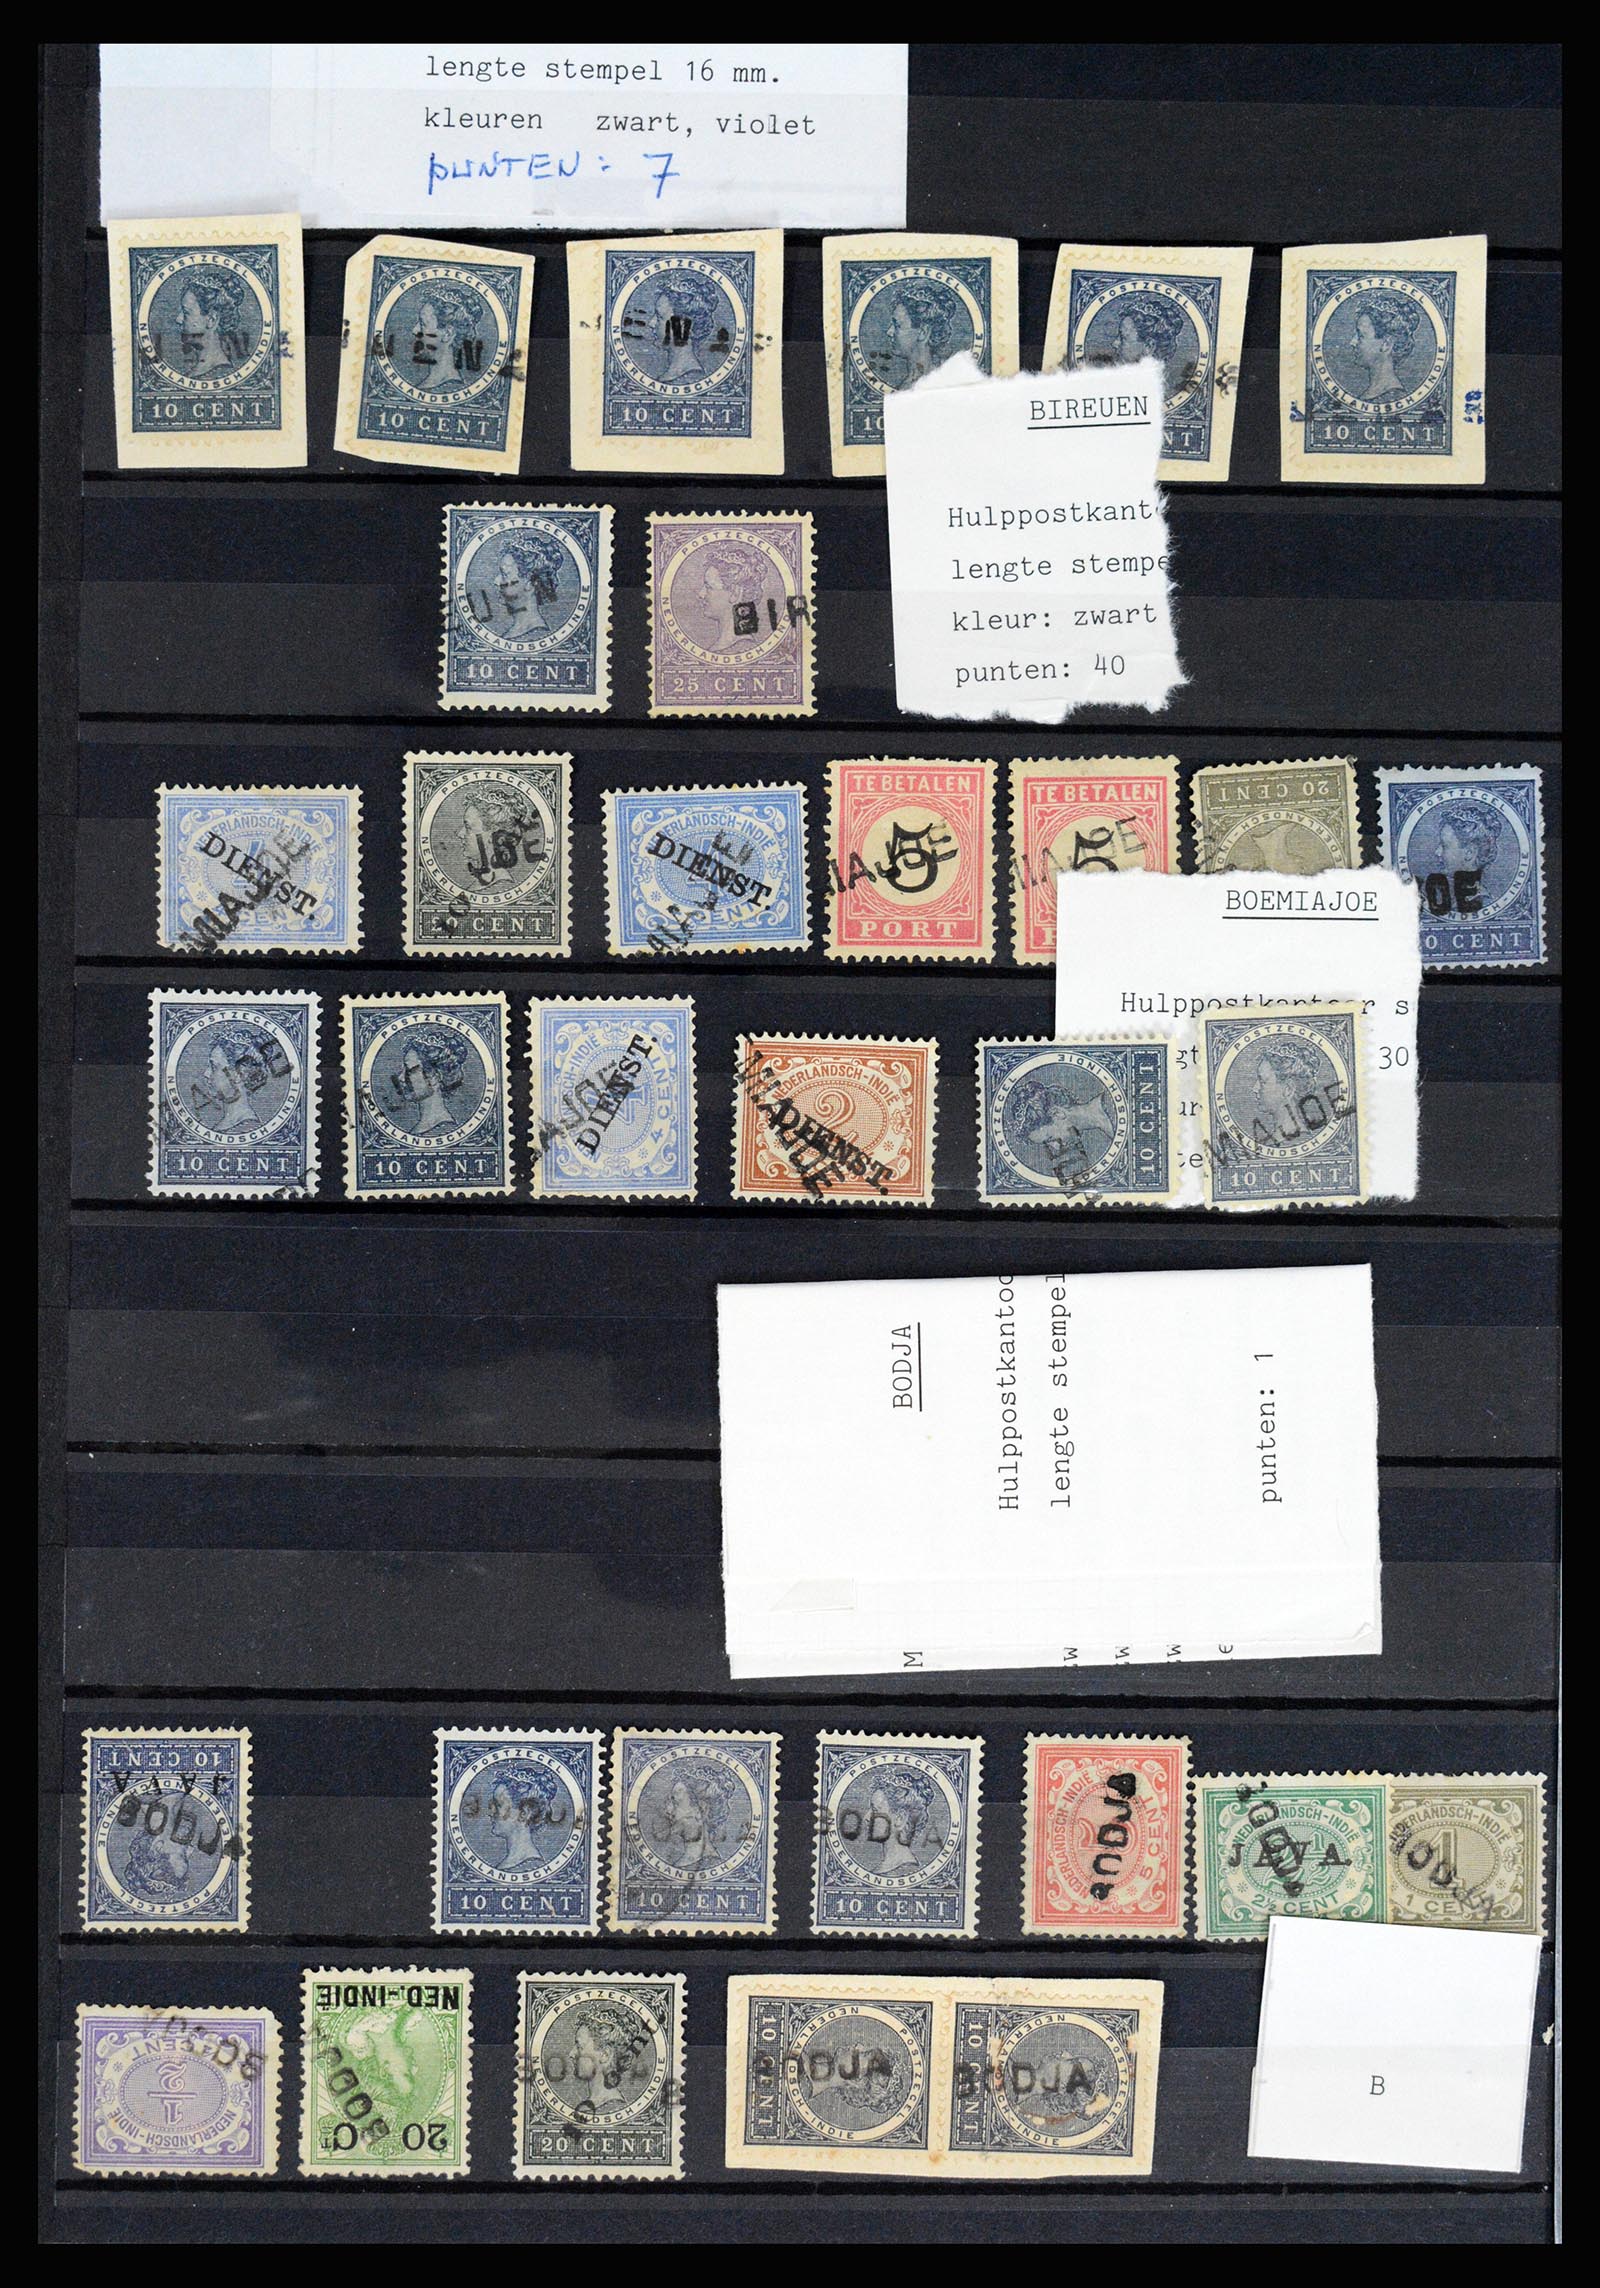 36512 020 - Stamp collection 36512 Nederlands Indië stempels 1872-1930.